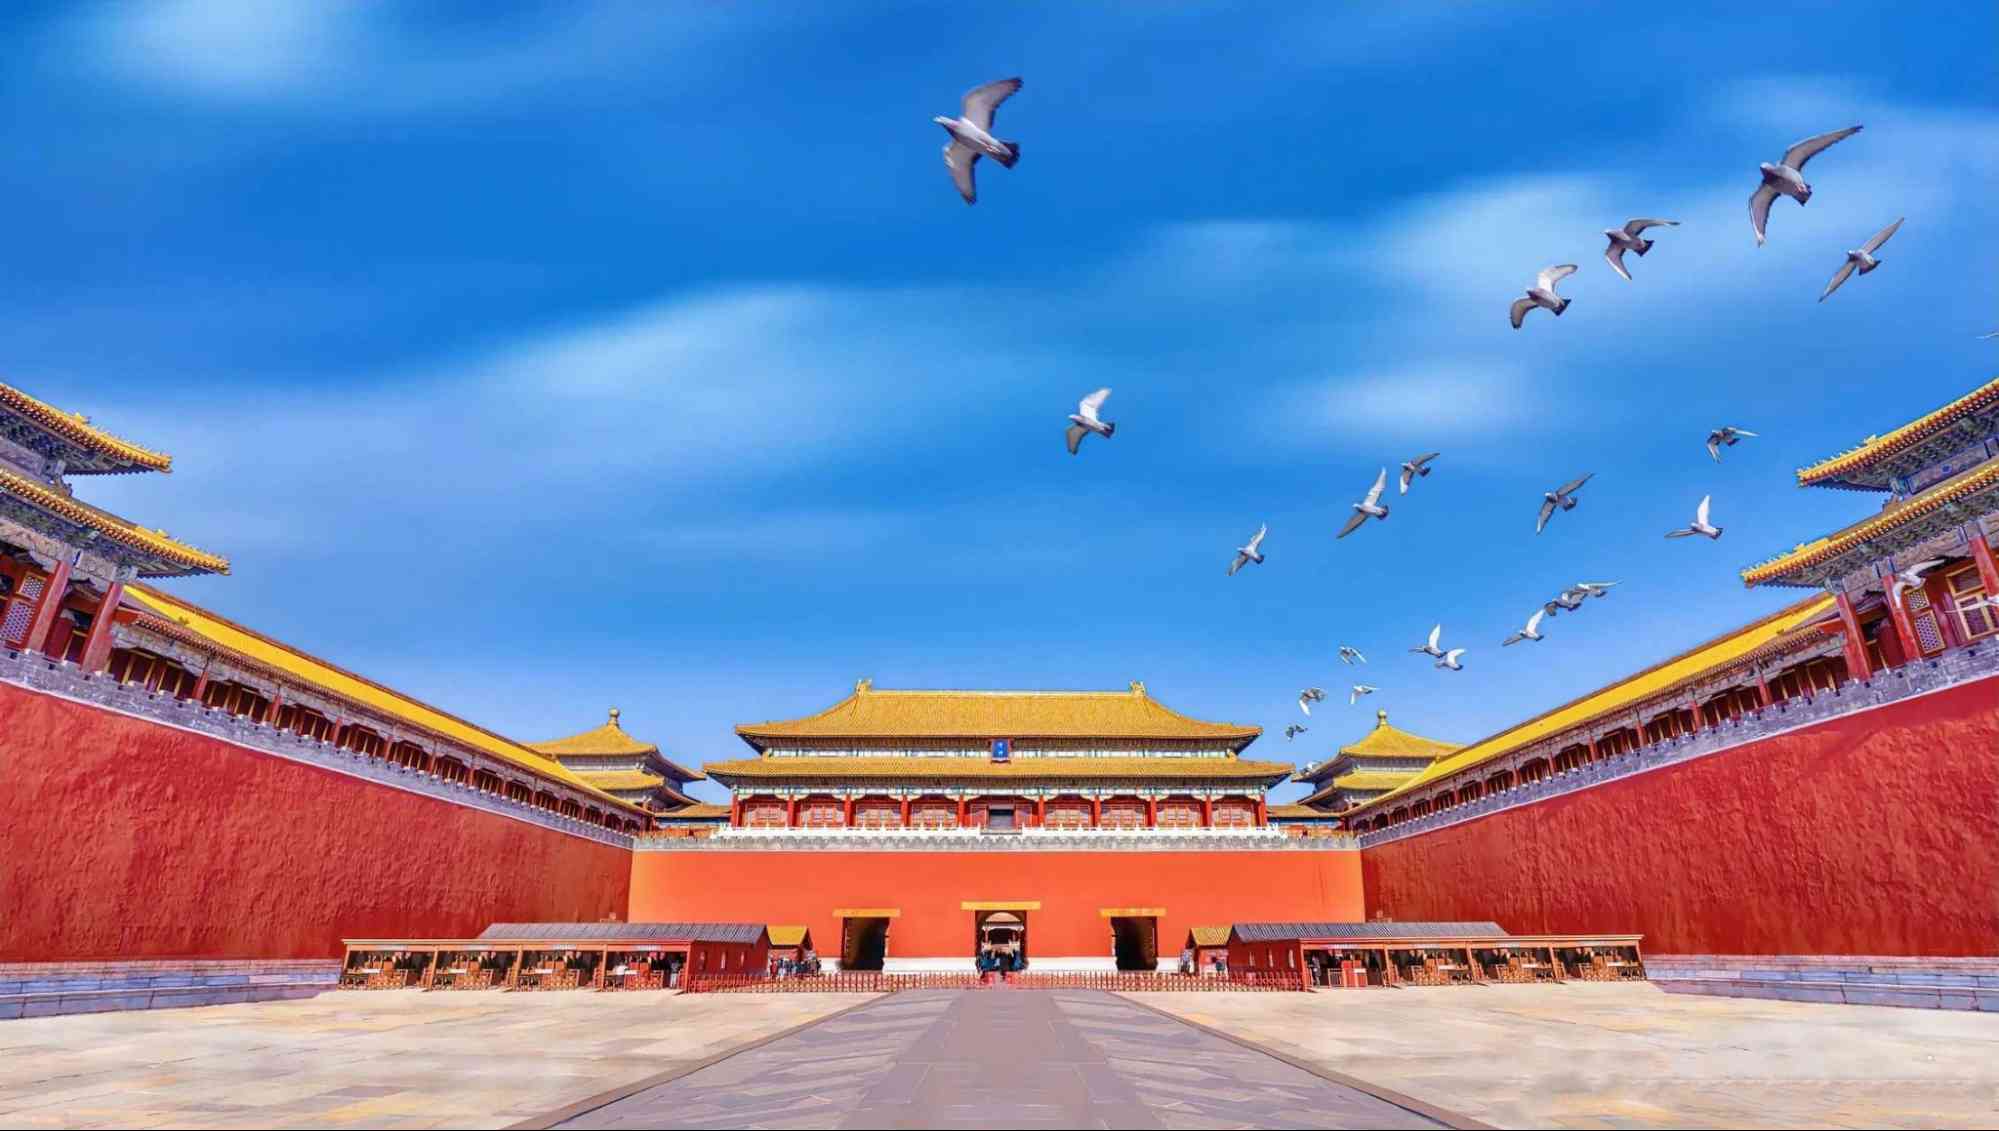 Tử Cấm Thành - Báu vật văn hóa Trung Hoa